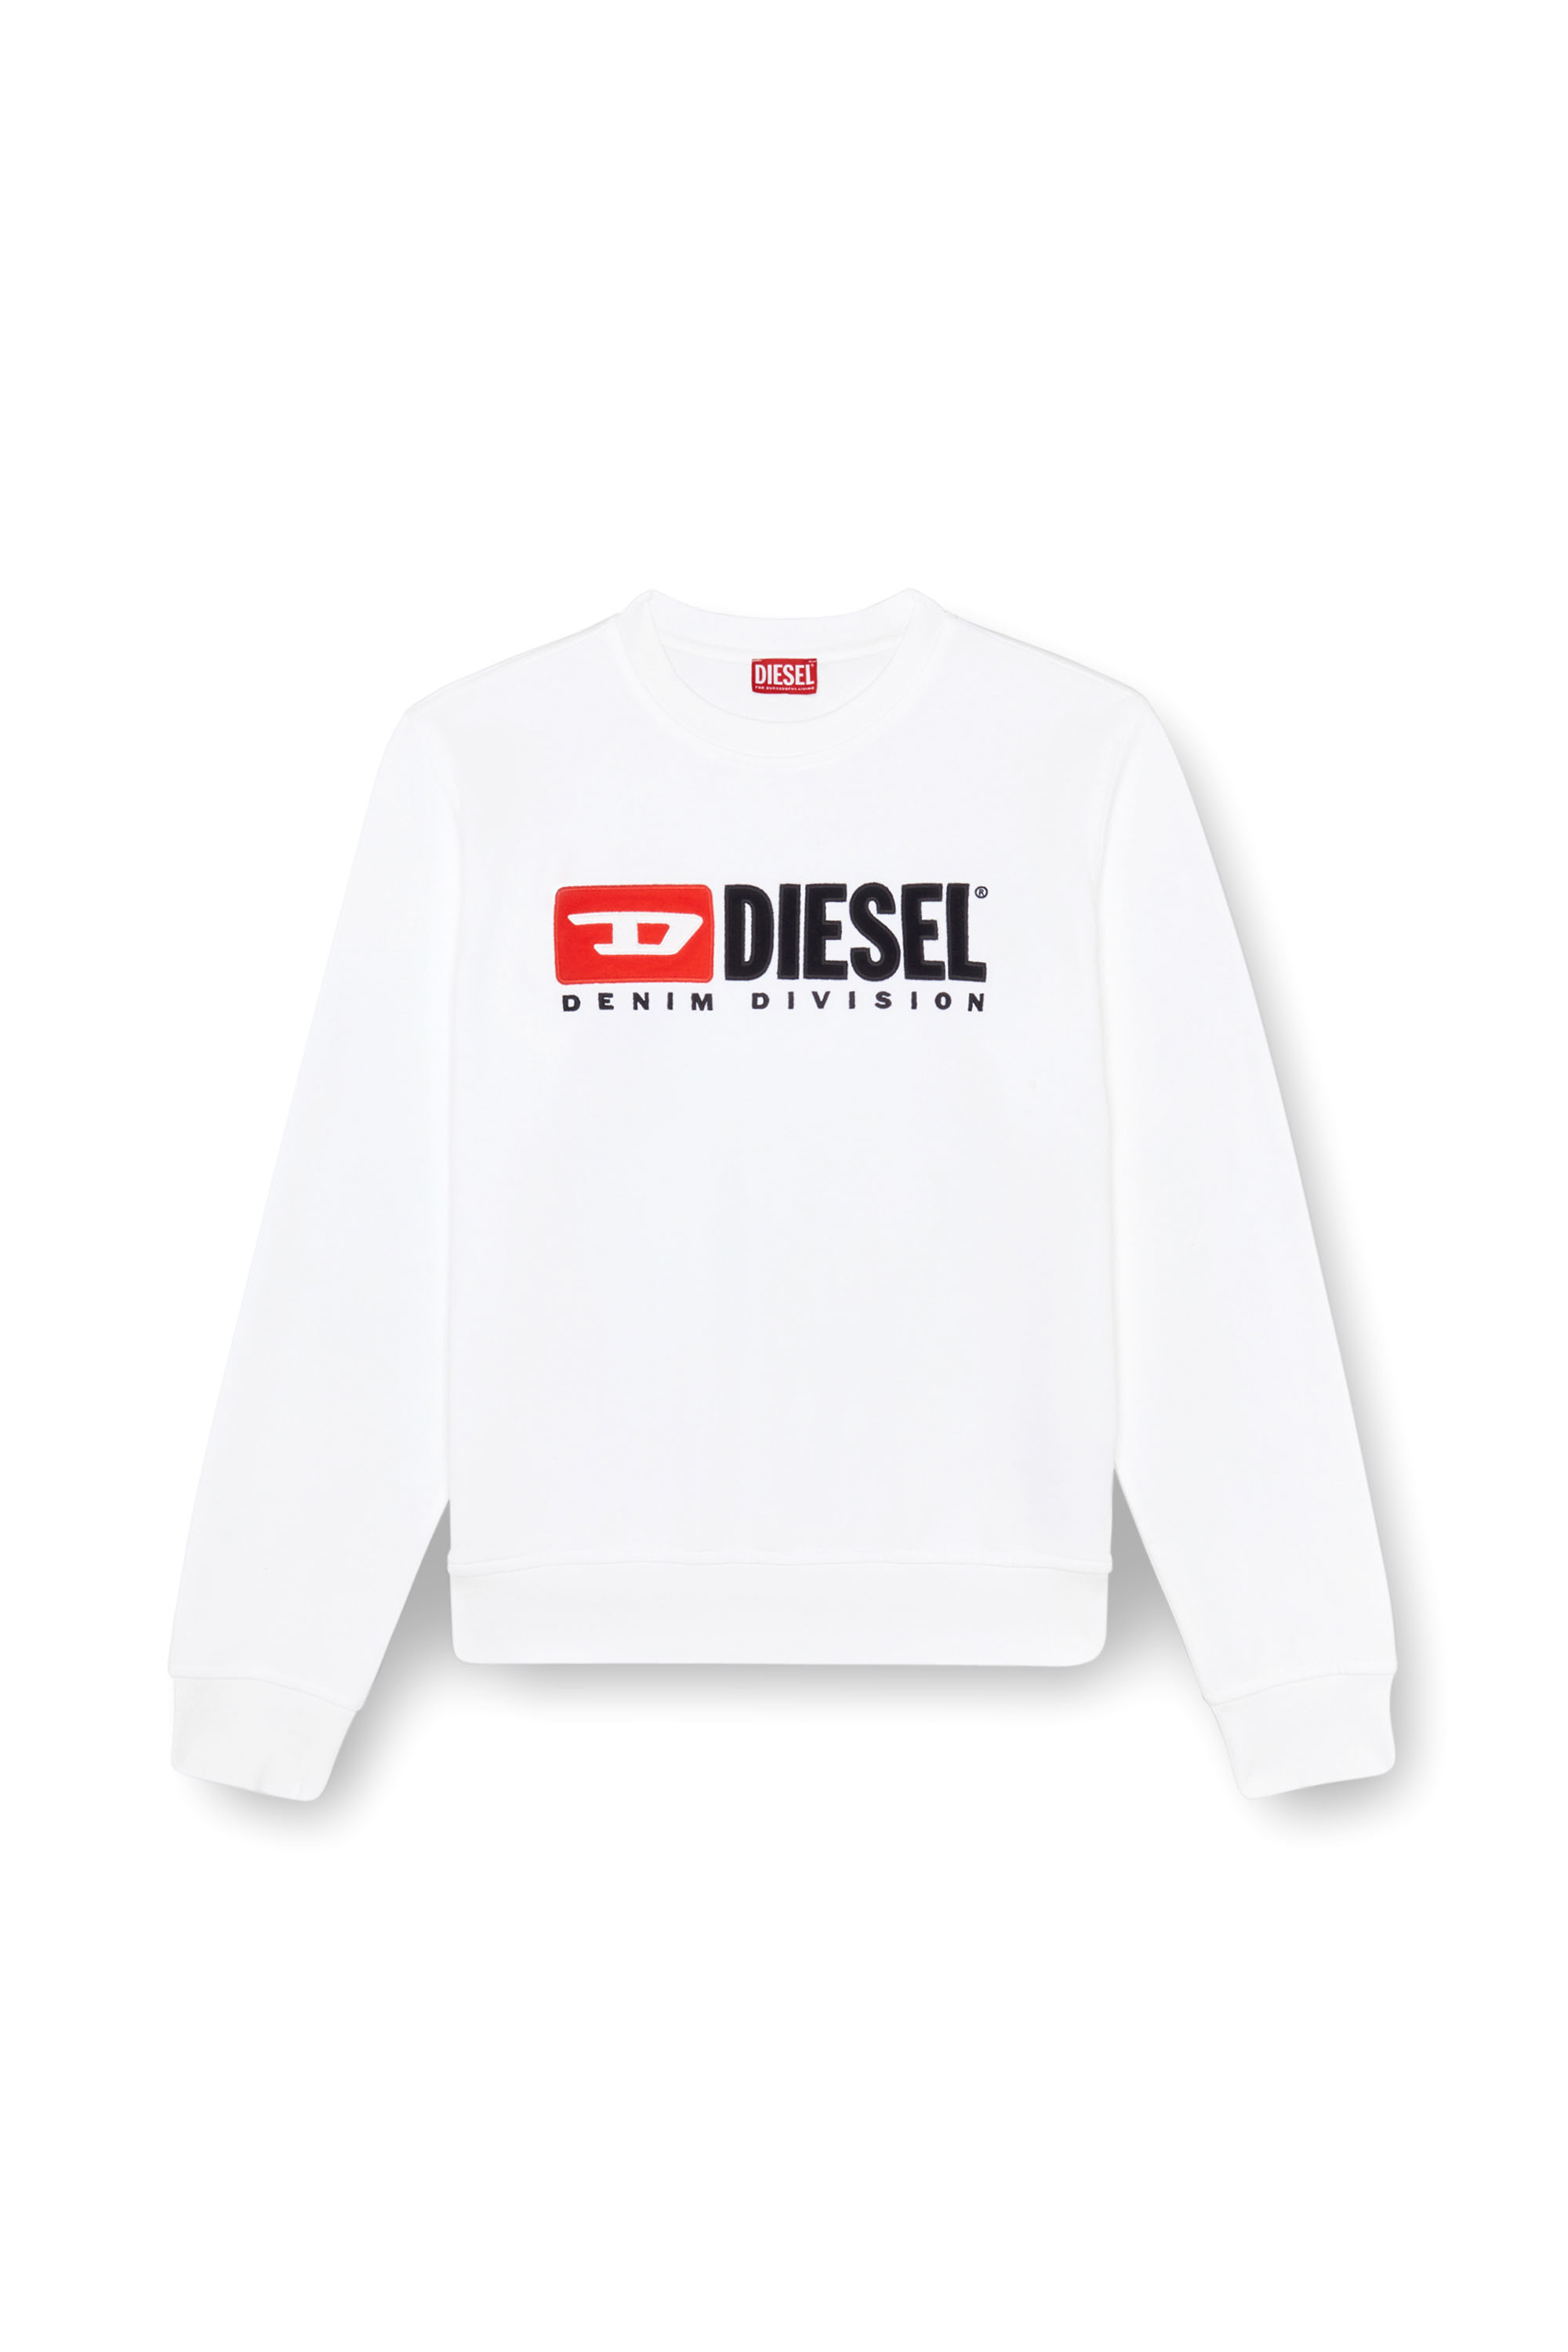 Diesel - S-BOXT-DIV, White - Image 4